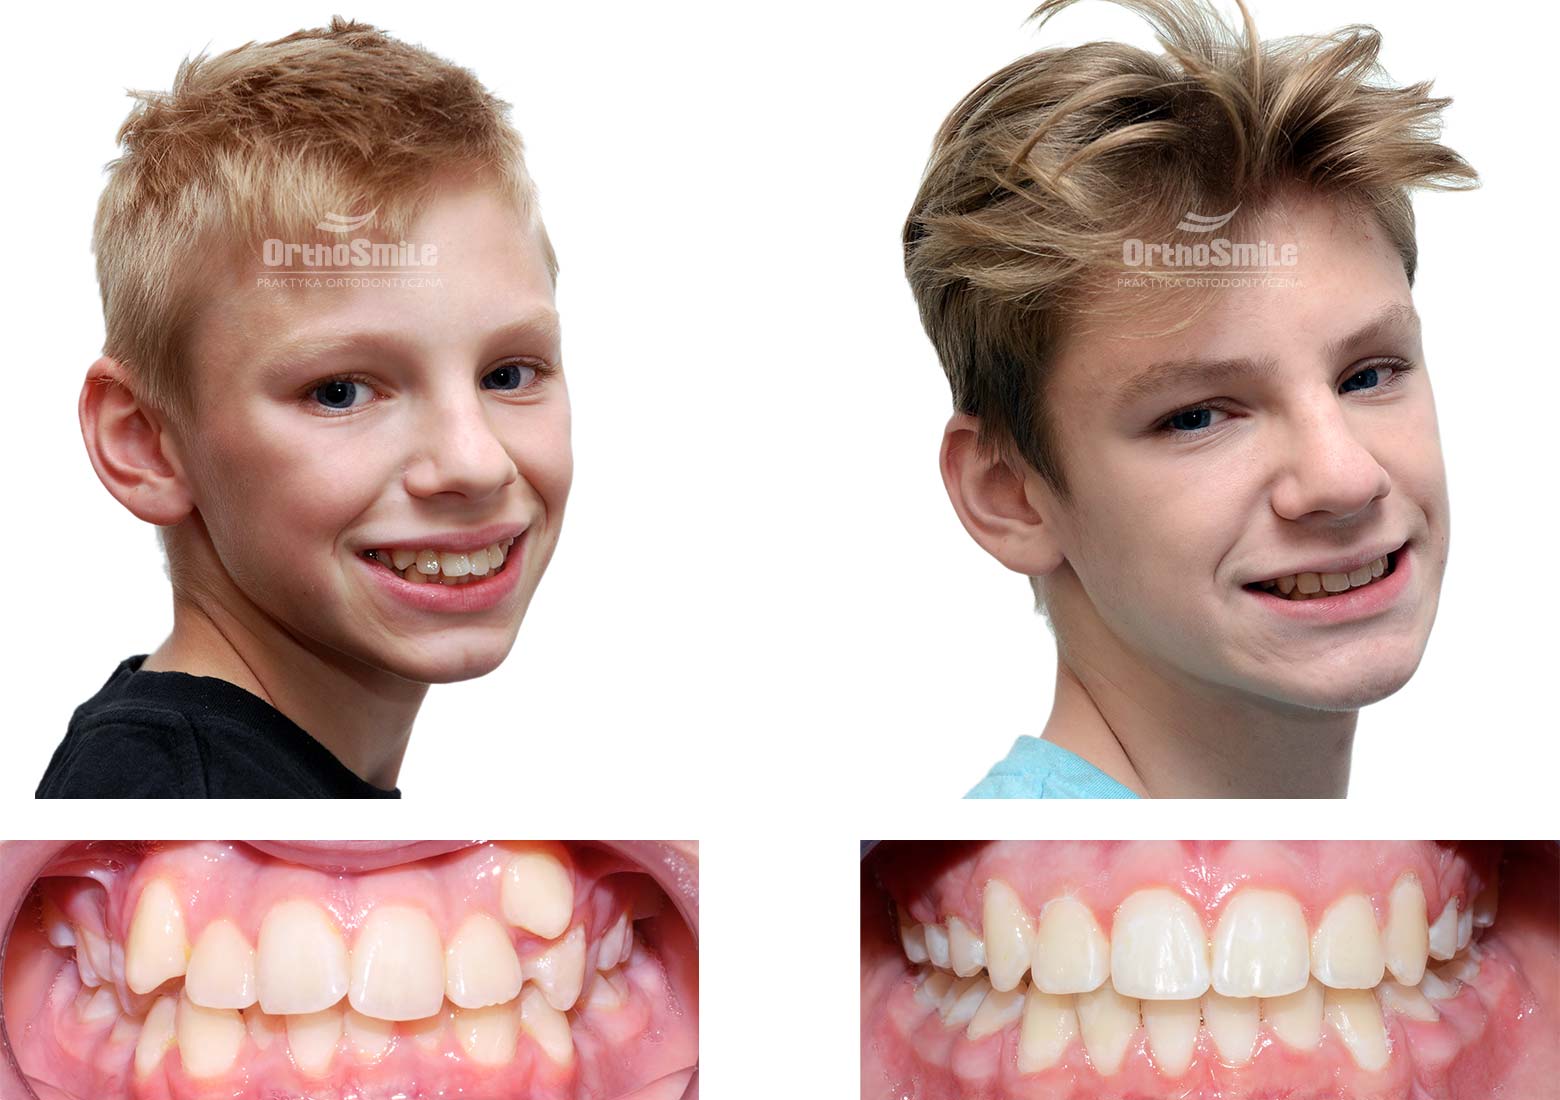 Przykład leczenia stłoczeń aparatem stałym u młodzieży. Leczenie ortodontyczne dzieci – metamorfozy. Praktyka Ortodontyczna Orthosmile, Wrocław